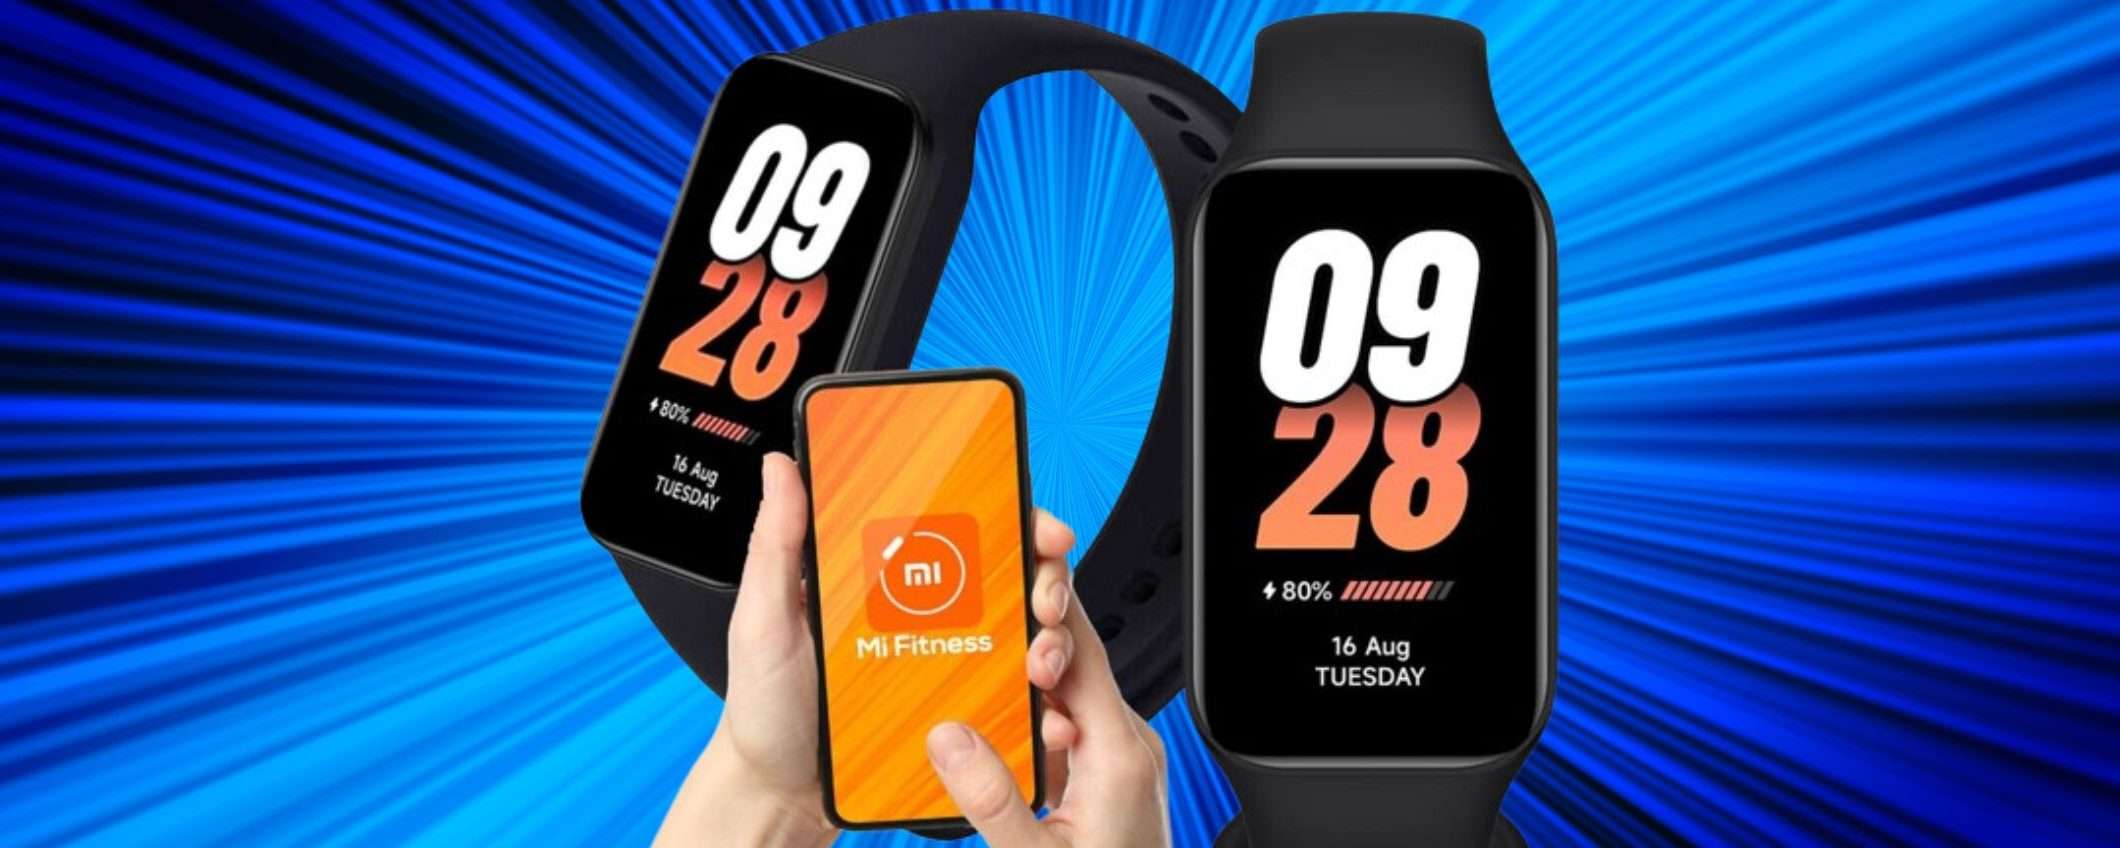 Xiaomi Smart Band 8 Active a 23€ è FOLLIA: smartband eccellente a prezzo WOW